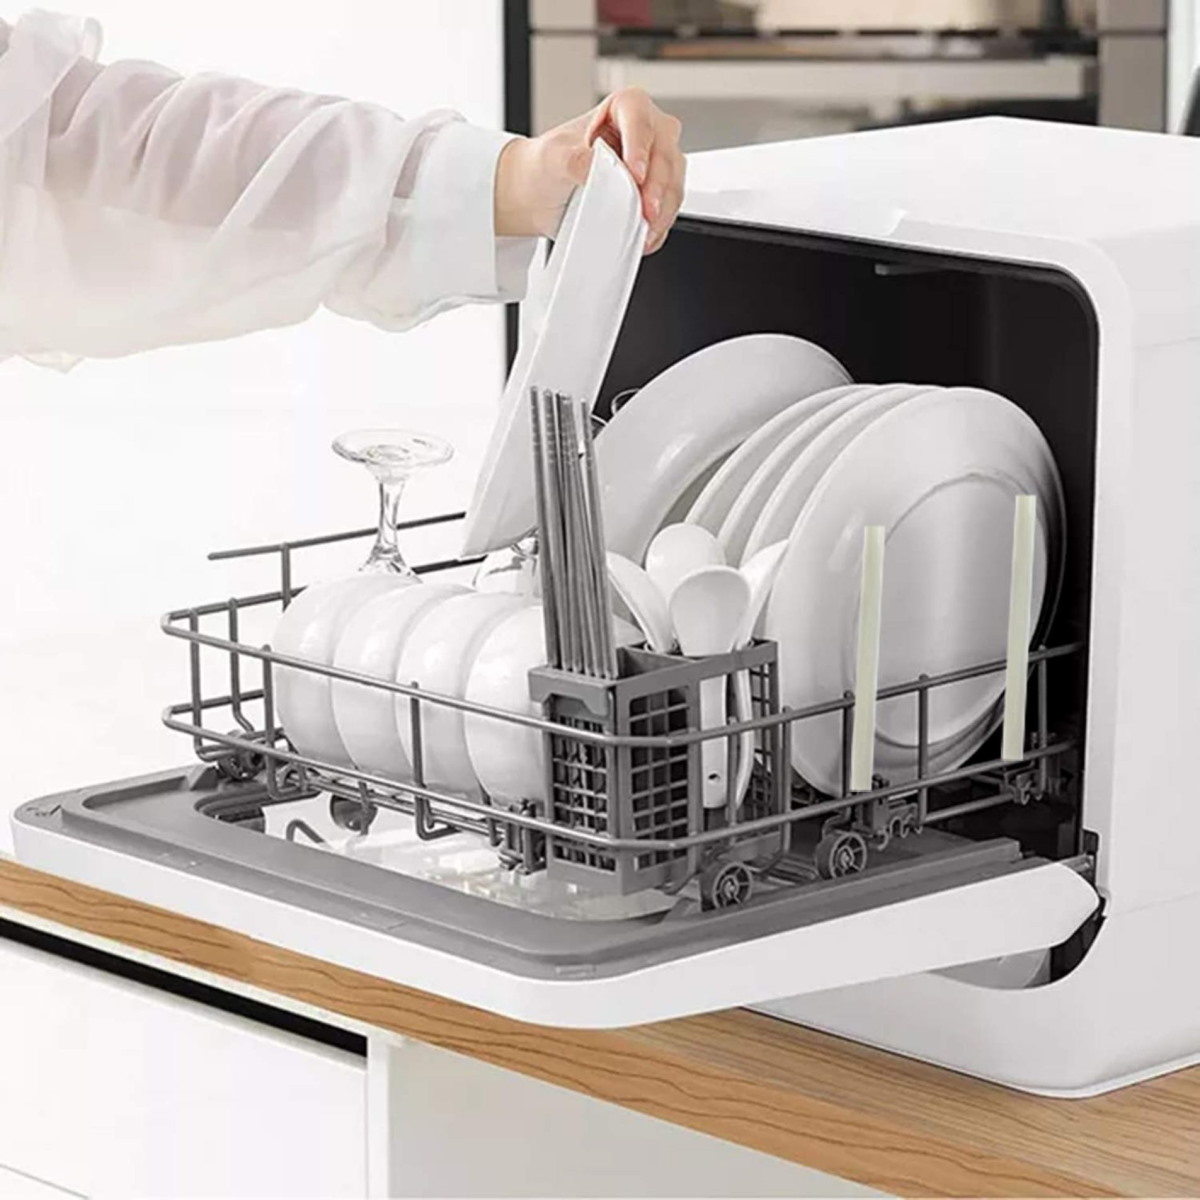 Купить настольную посудомоечную машину недорого. Посудомоечная машина Delonghi ddw07t. Посудомойка Xiaomi Qcooker Tabletop. Посудомоечная машина Хотпоинт Аристон настольная. Посудомойка Xiaomi Qcooker Tabletop CL-XW-x4.